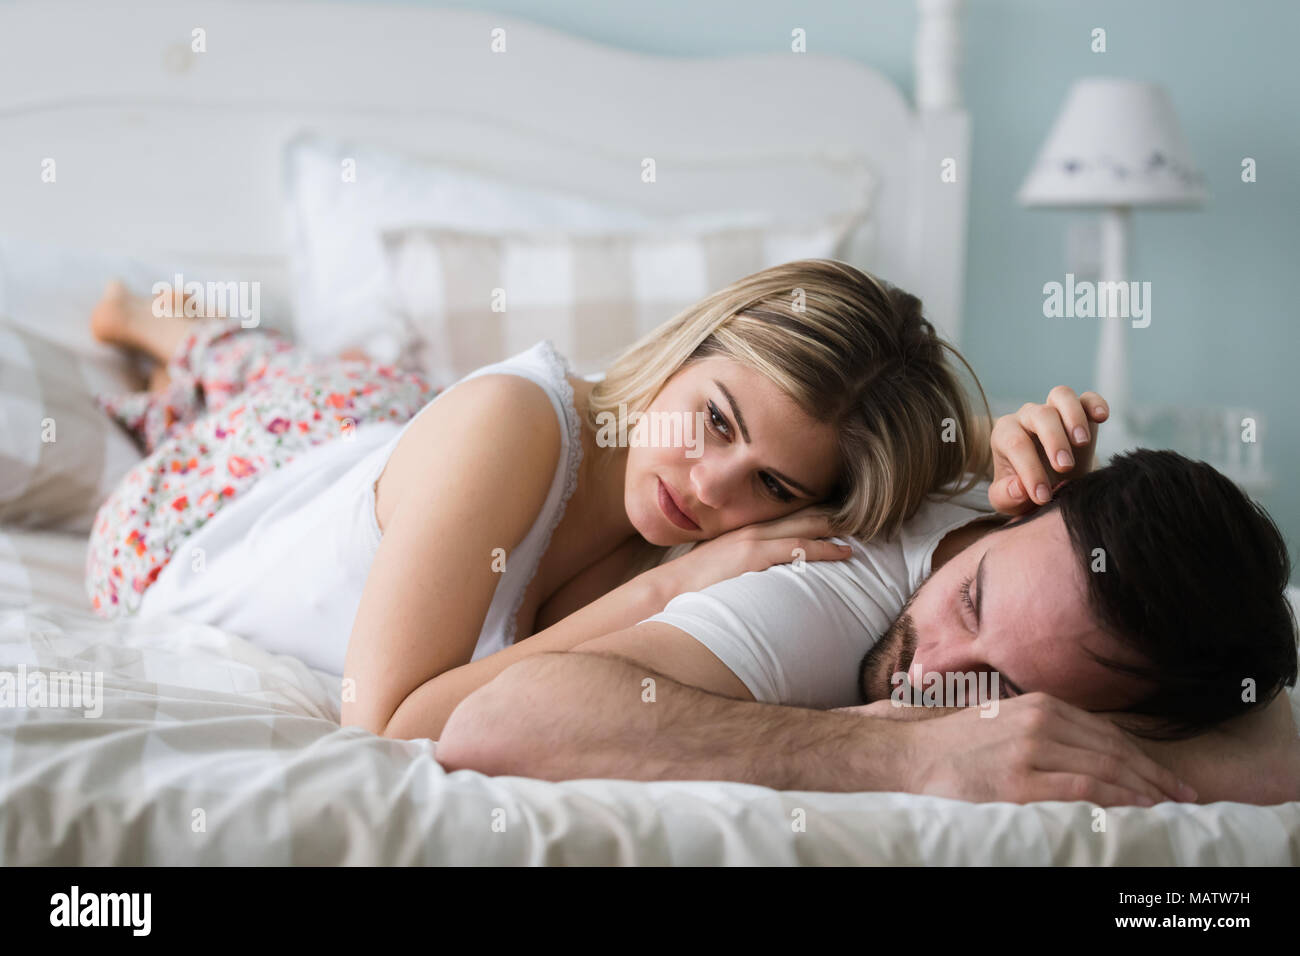 Bild des jungen Paares in Beziehung Probleme Stockfoto